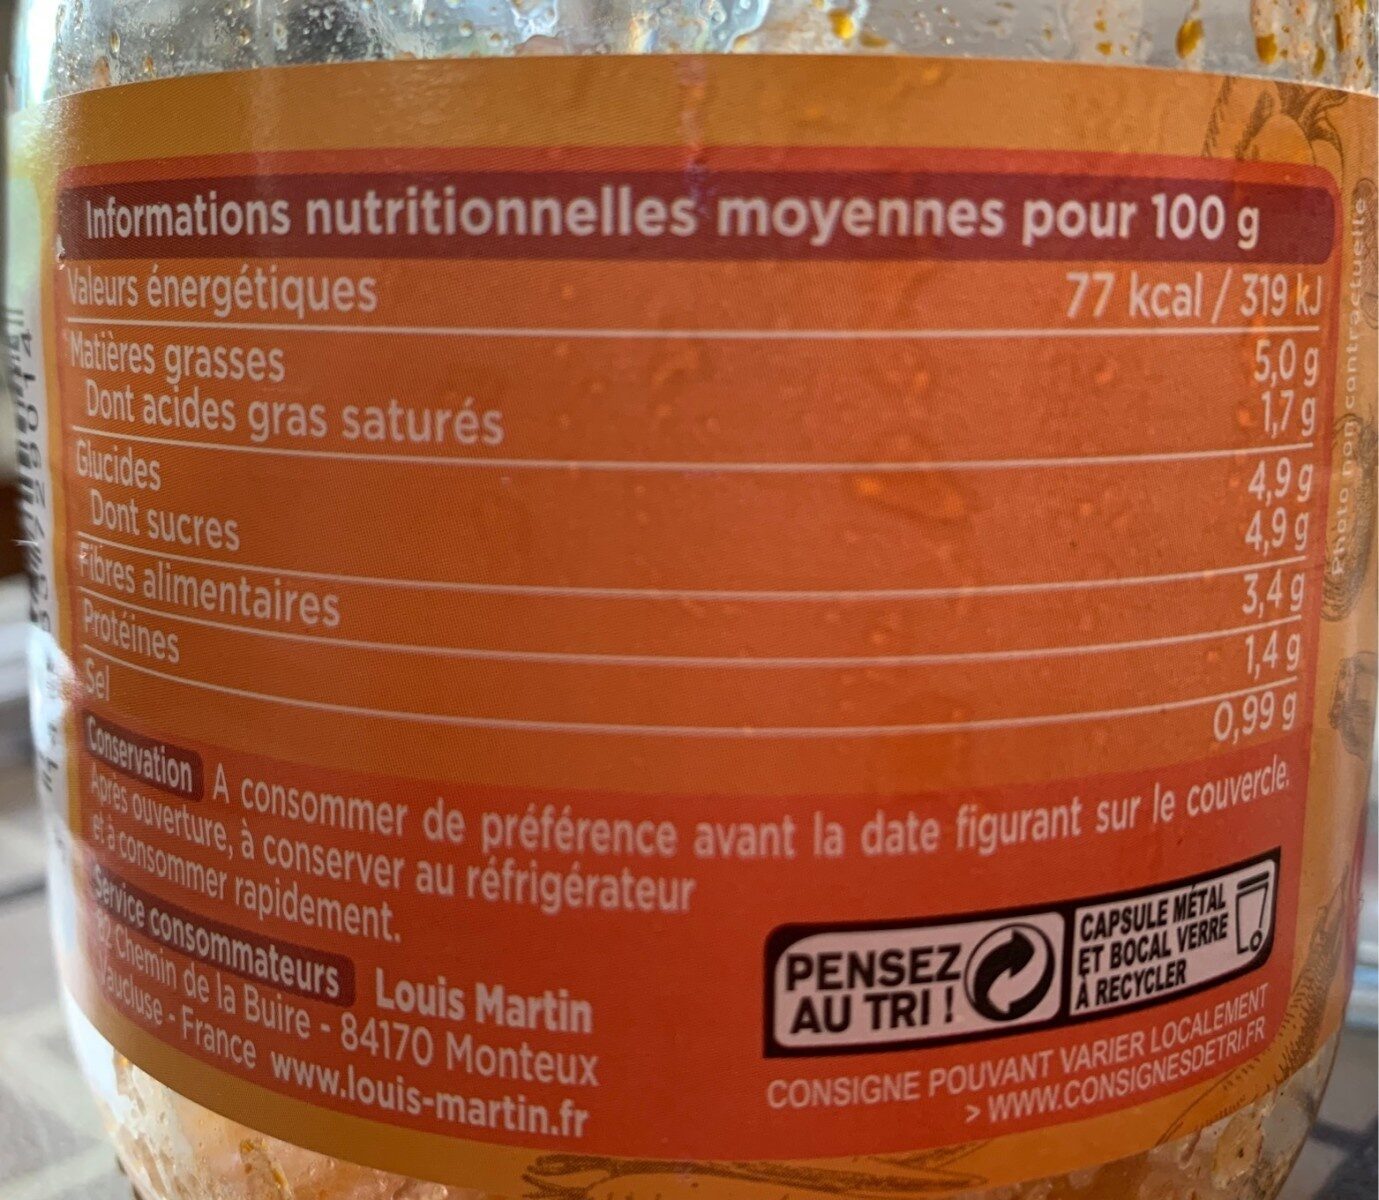 Piperade au Piment d'Espelette - Informations nutritionnelles - fr